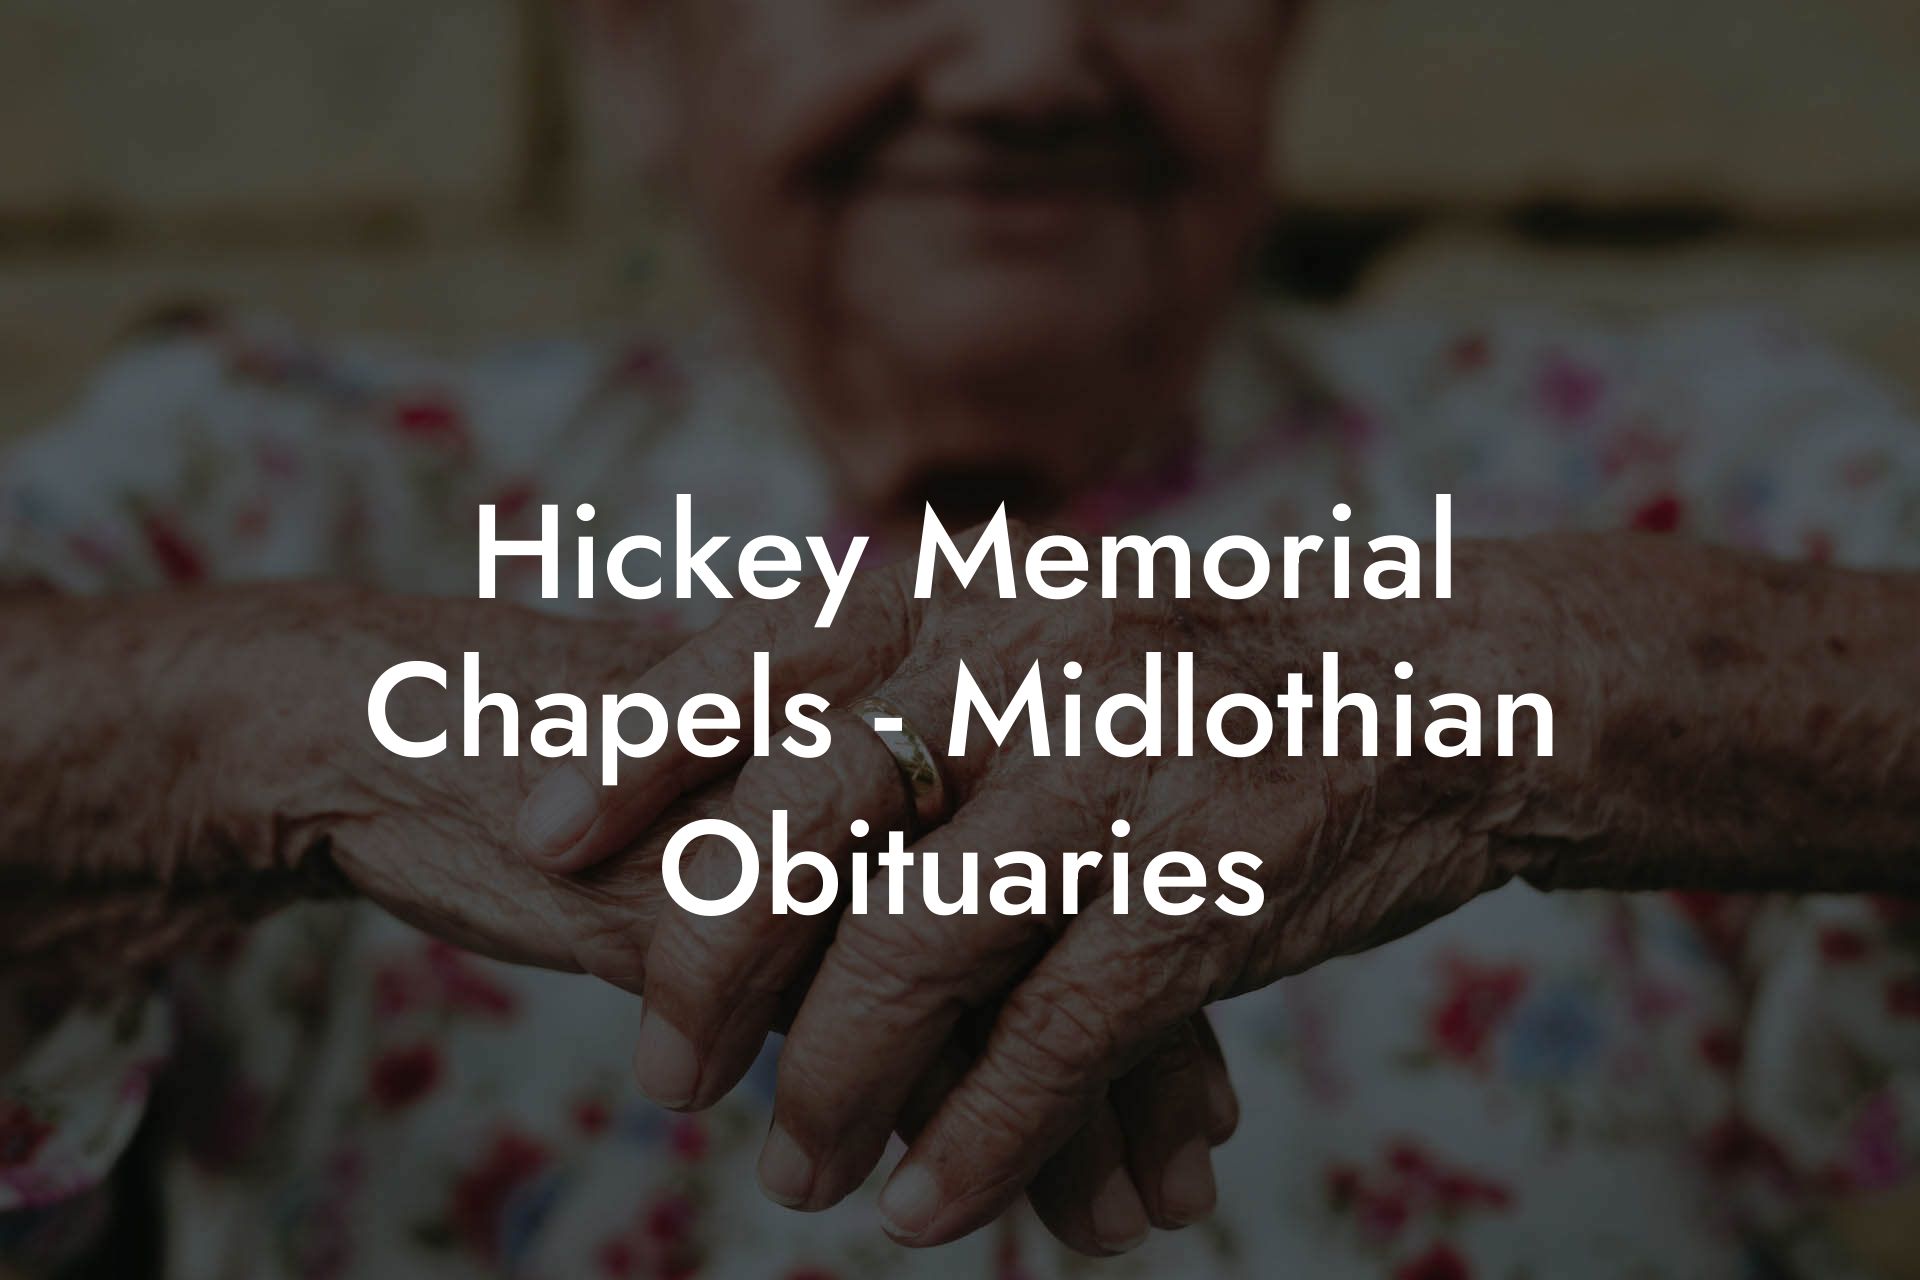 Hickey Memorial Chapels - Midlothian Obituaries